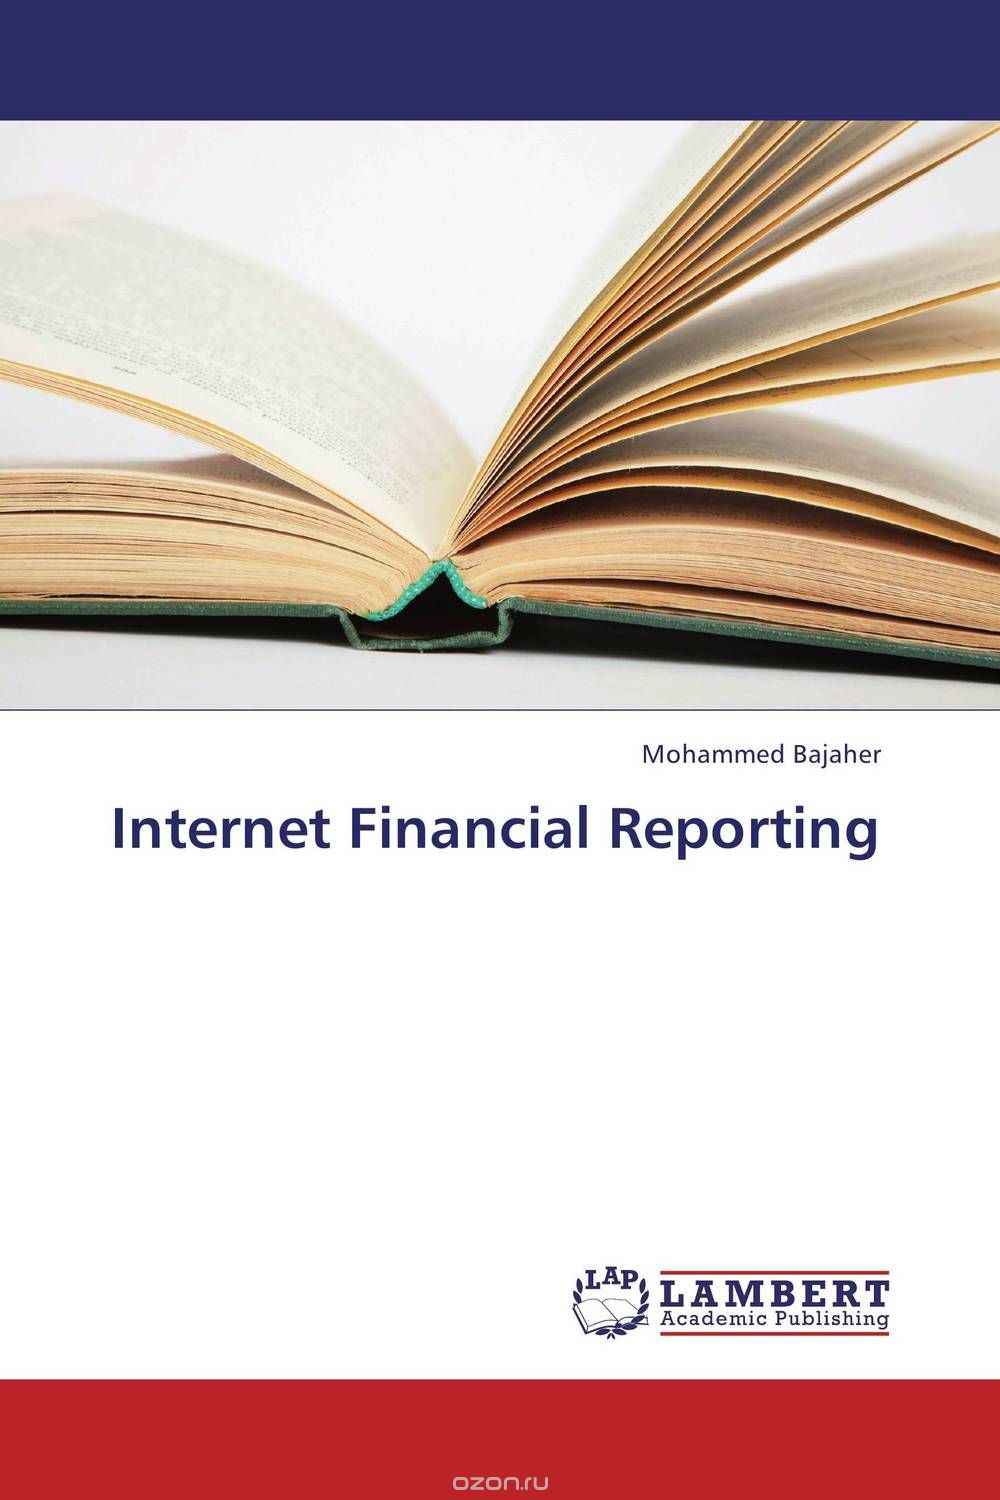 Скачать книгу "Internet Financial Reporting"